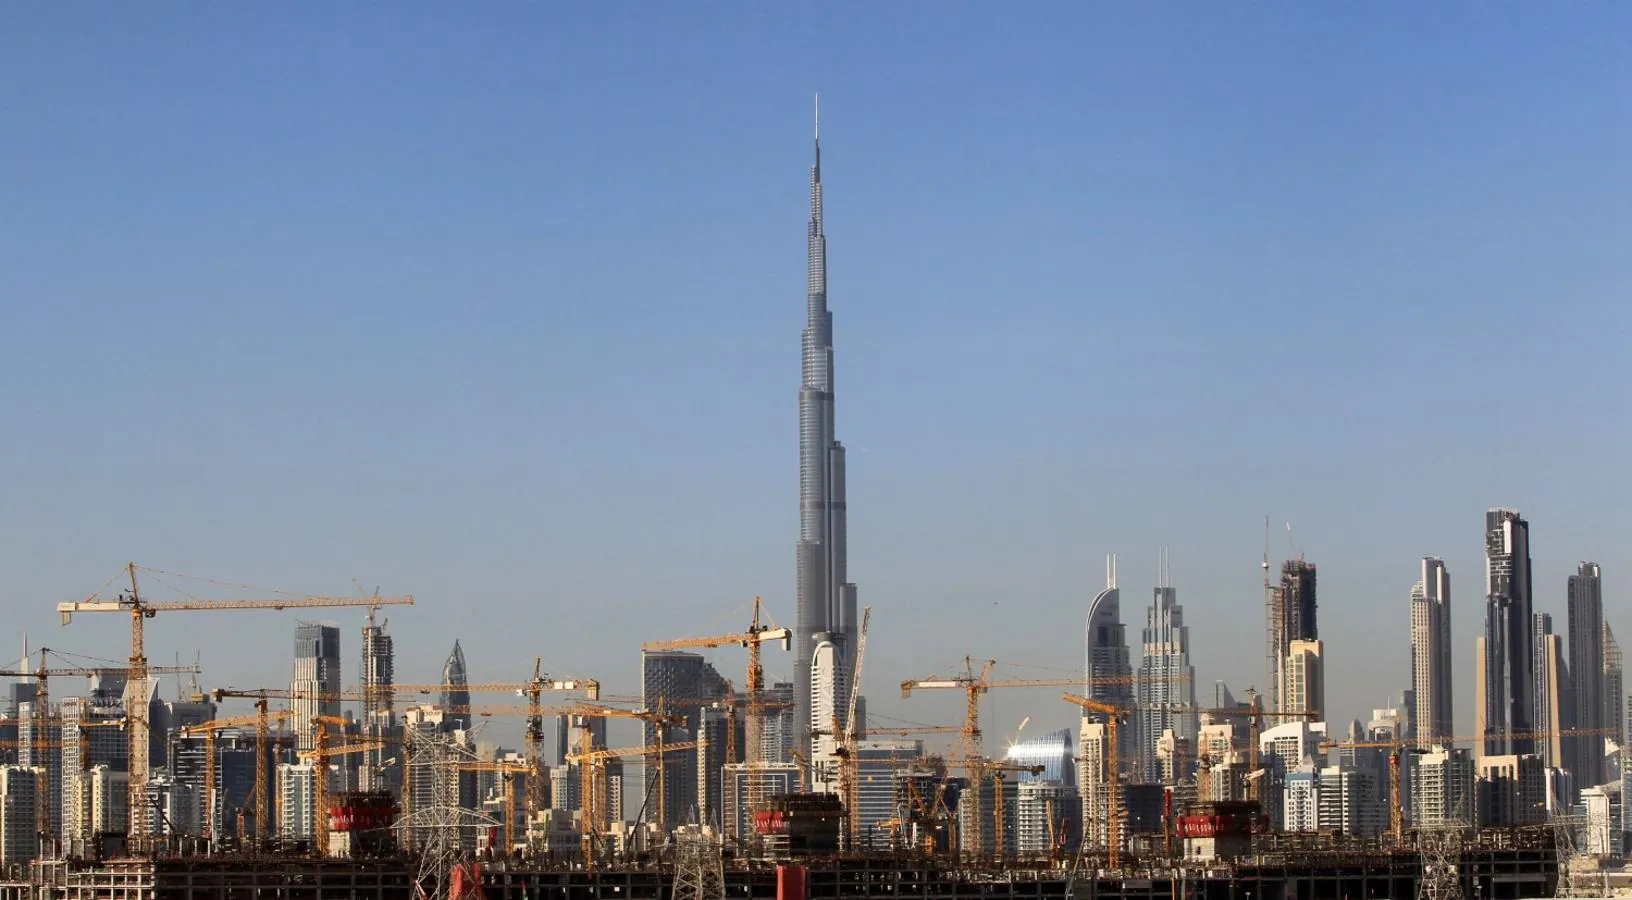 Vista general de las grúas en un sitio de construcción en Dubai